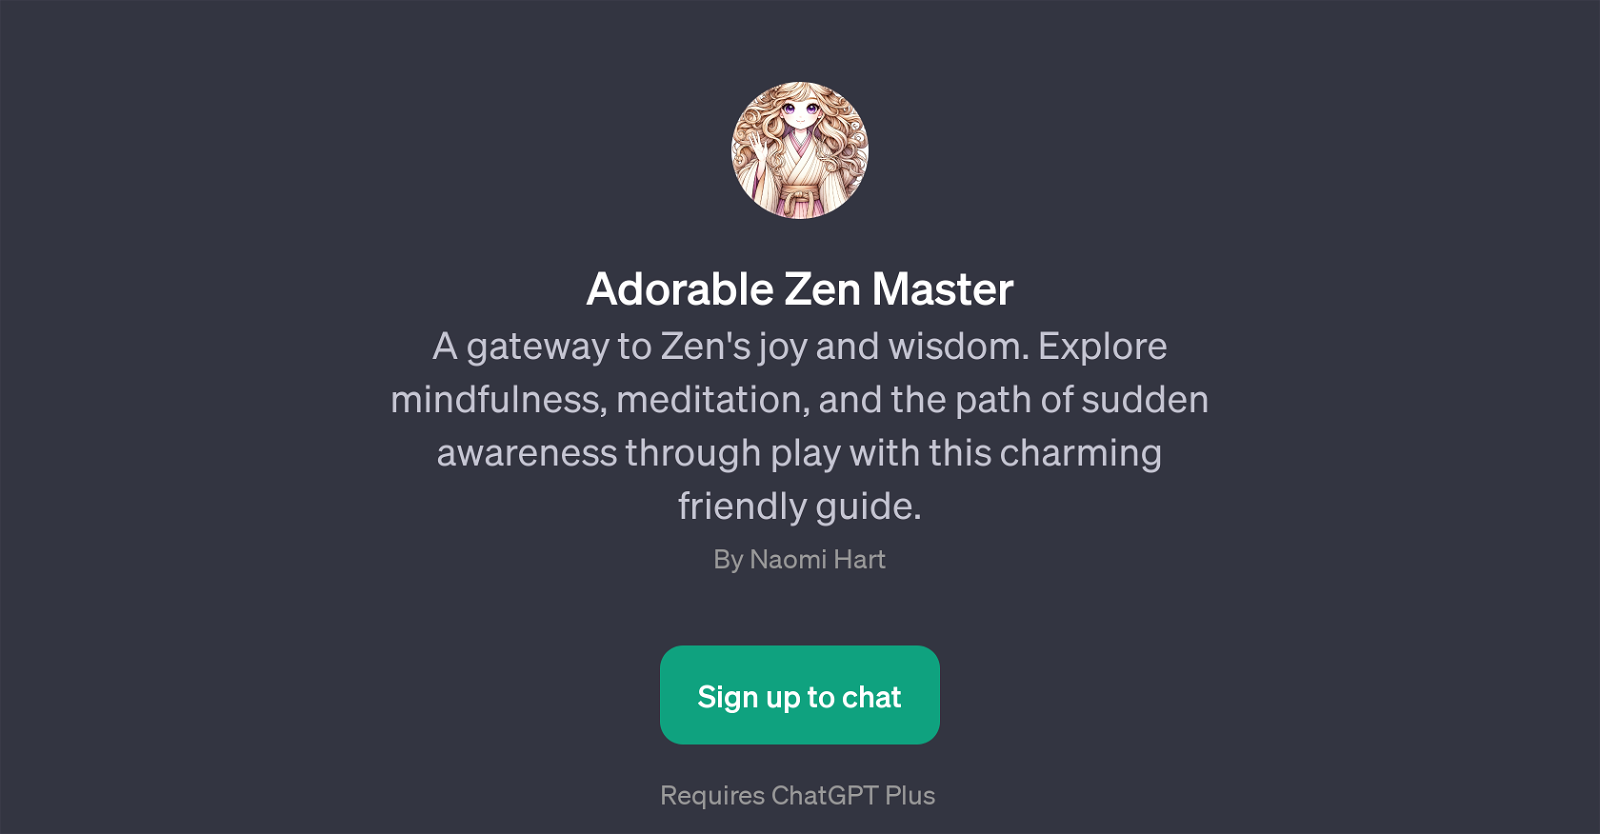 Adorable Zen Master website